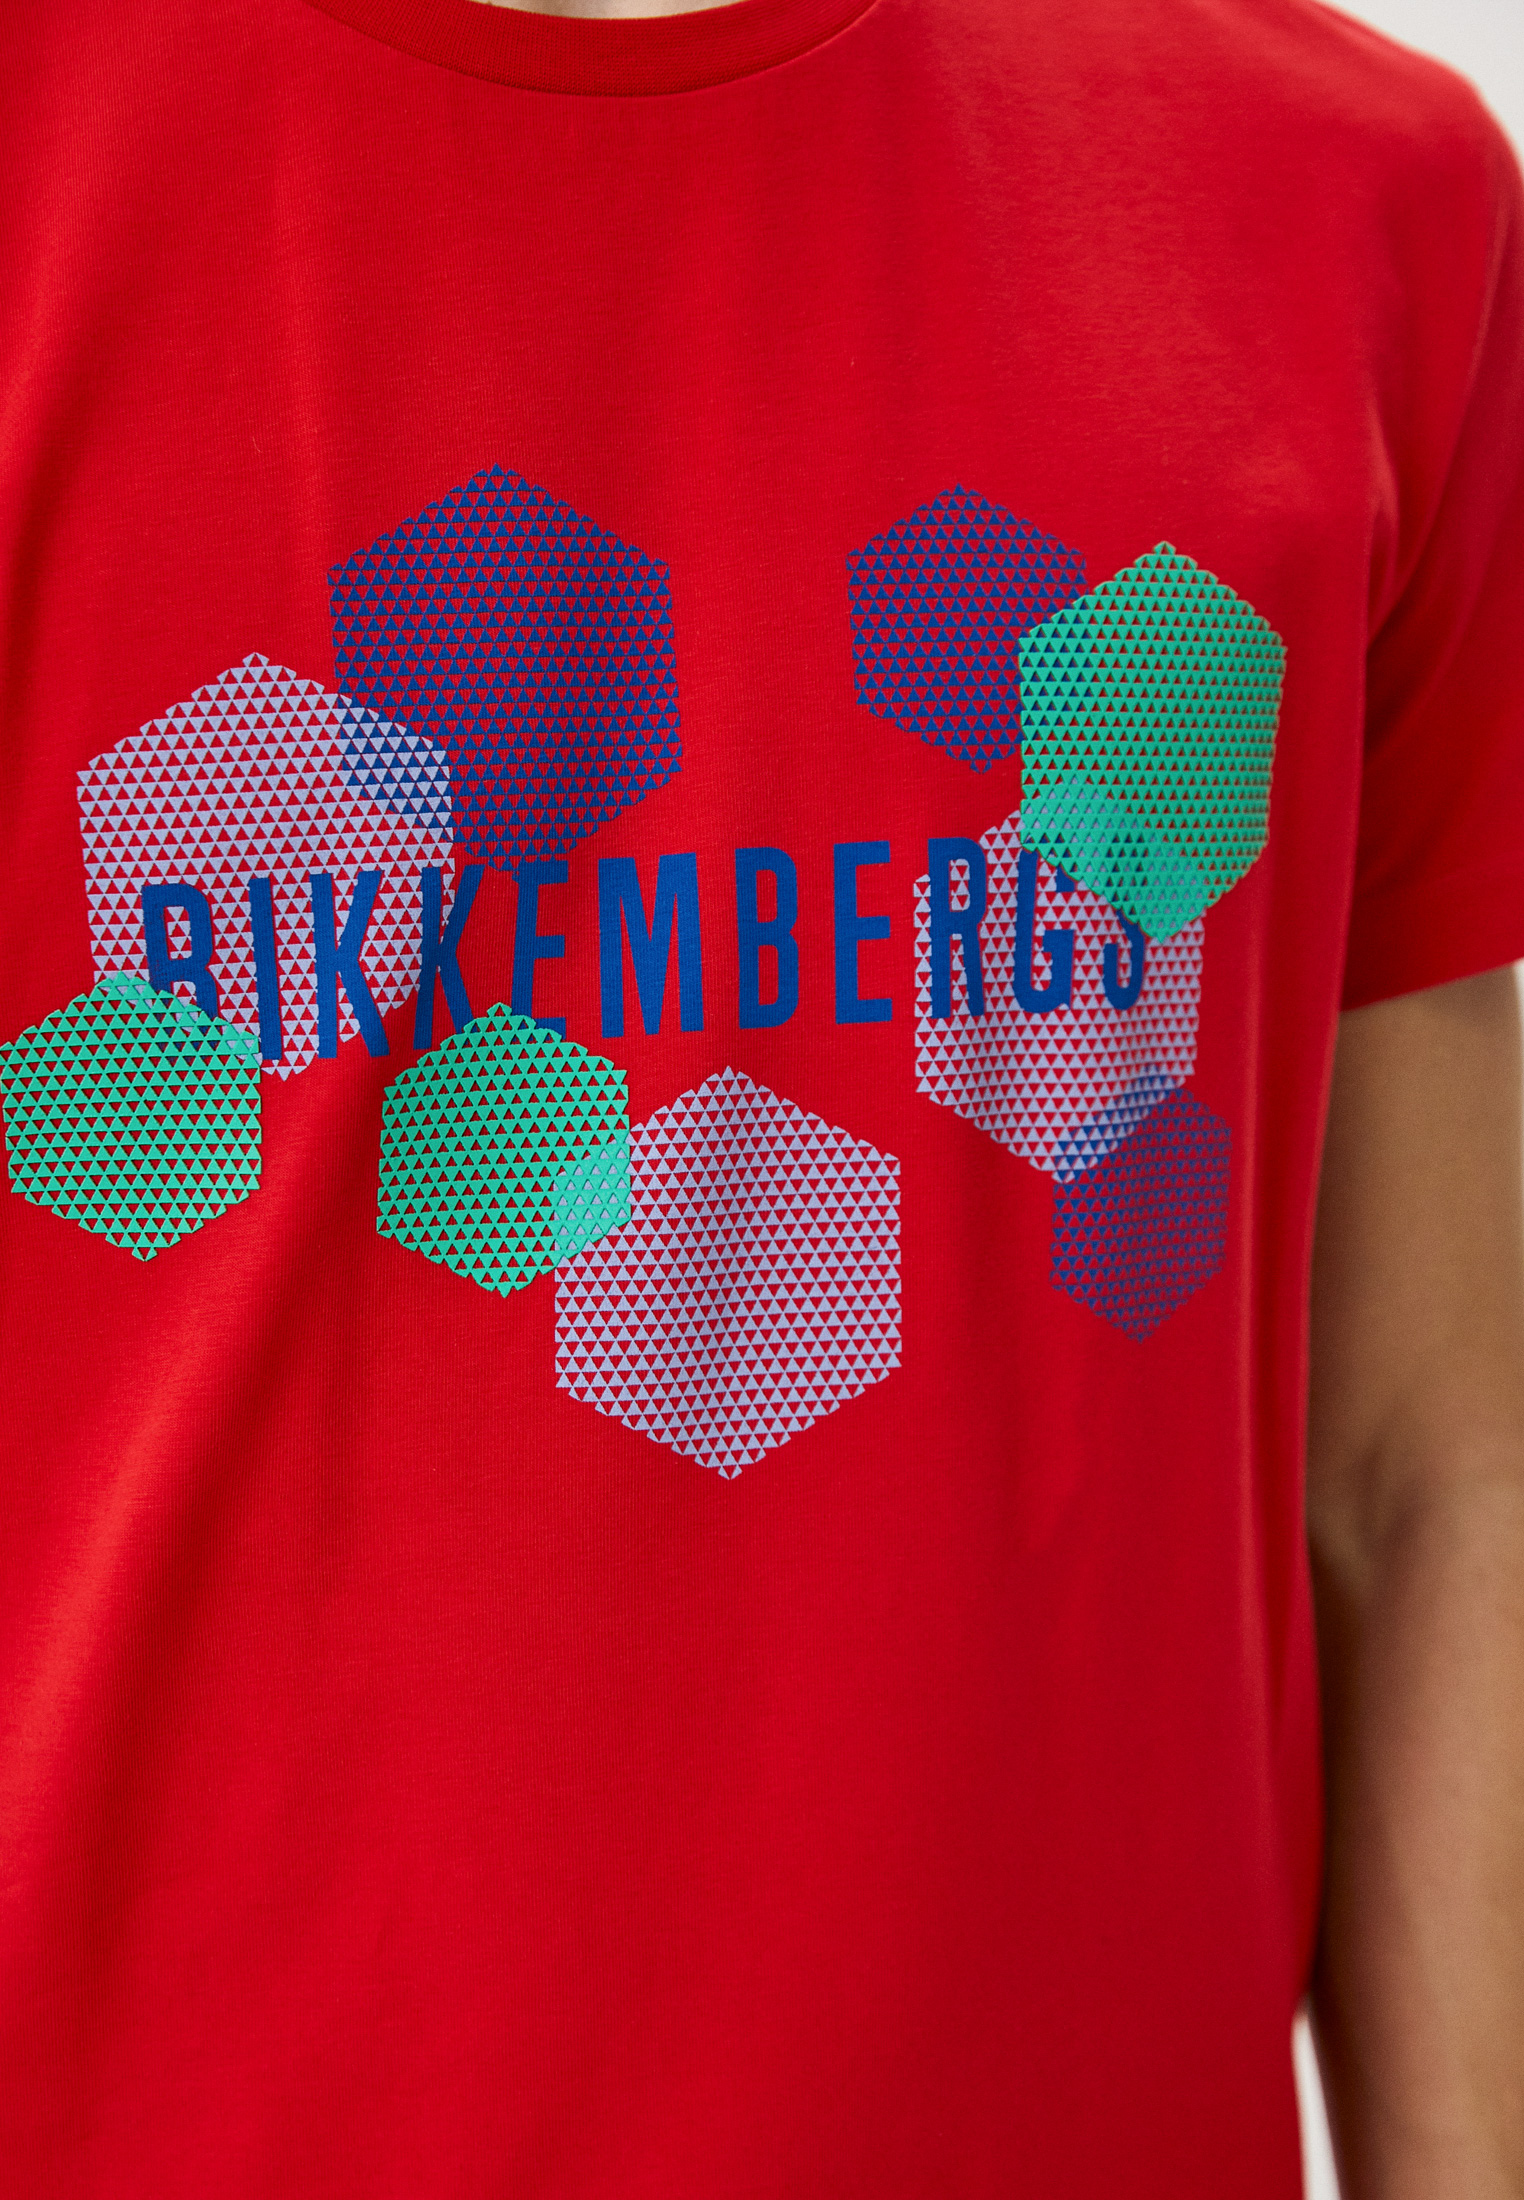 Мужская футболка Bikkembergs (Биккембергс) C41011ME2359: изображение 4